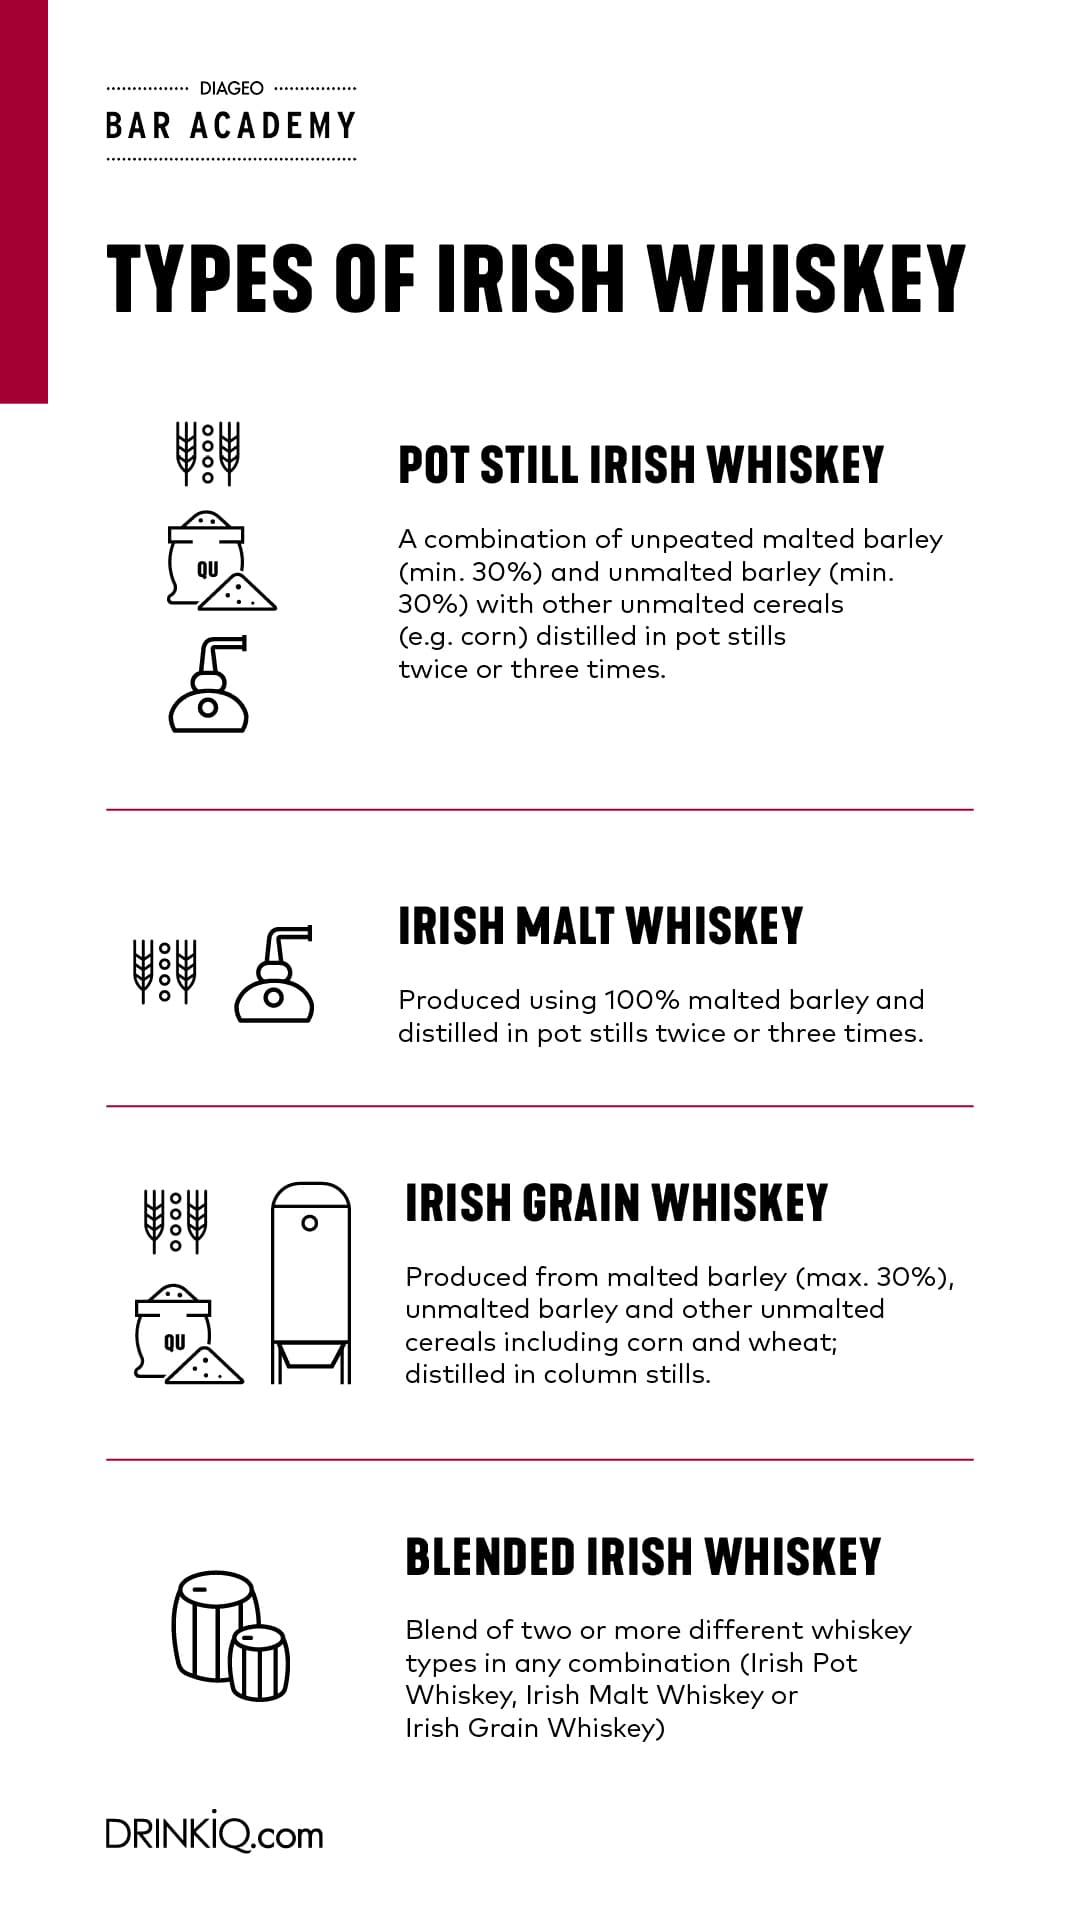 Arten von Irish Whiskey